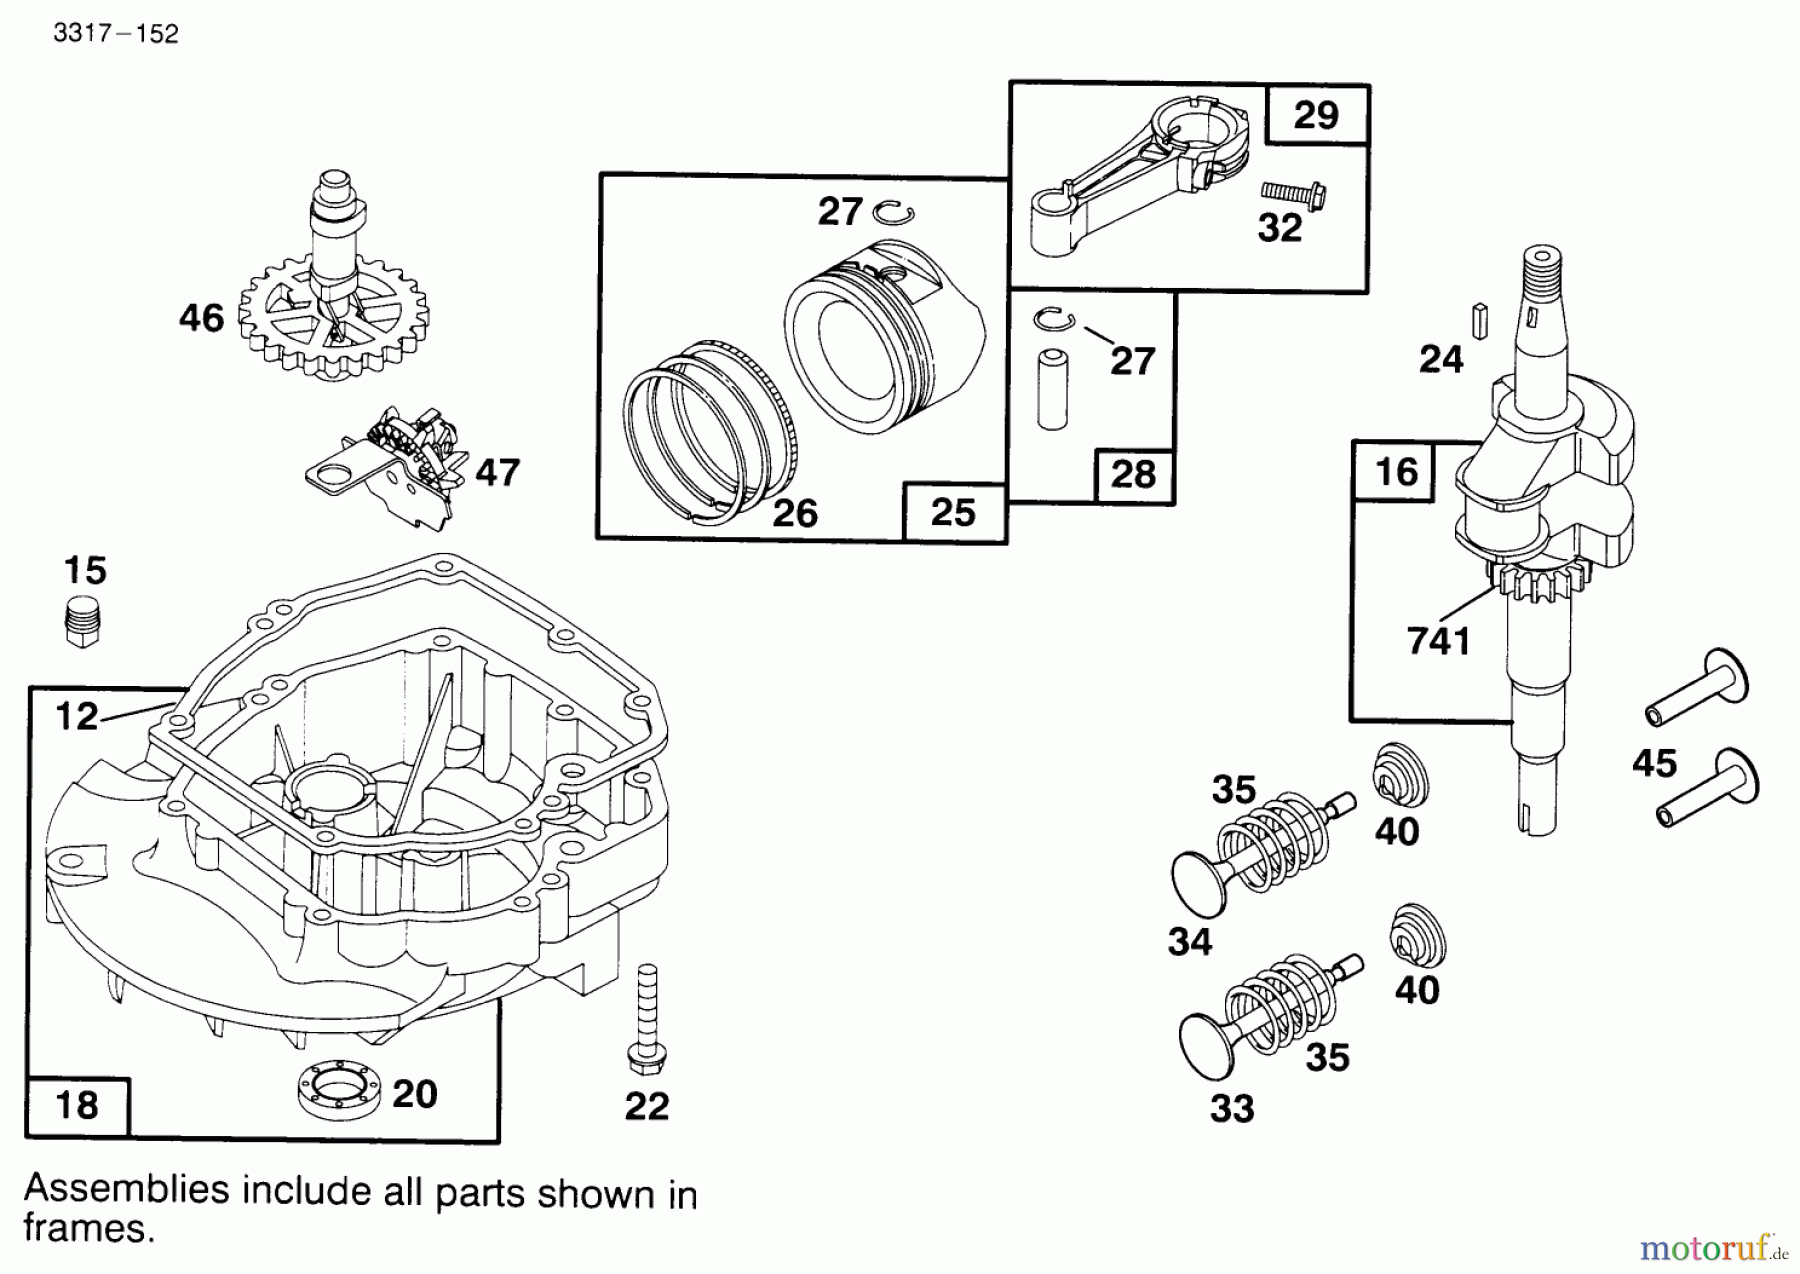  Toro Neu Mowers, Walk-Behind Seite 1 20443 - Toro Lawnmower, 1995 (5900001-5999999) ENGINE BRIGGS & STRATTON MODEL 127802-0640-01 #2